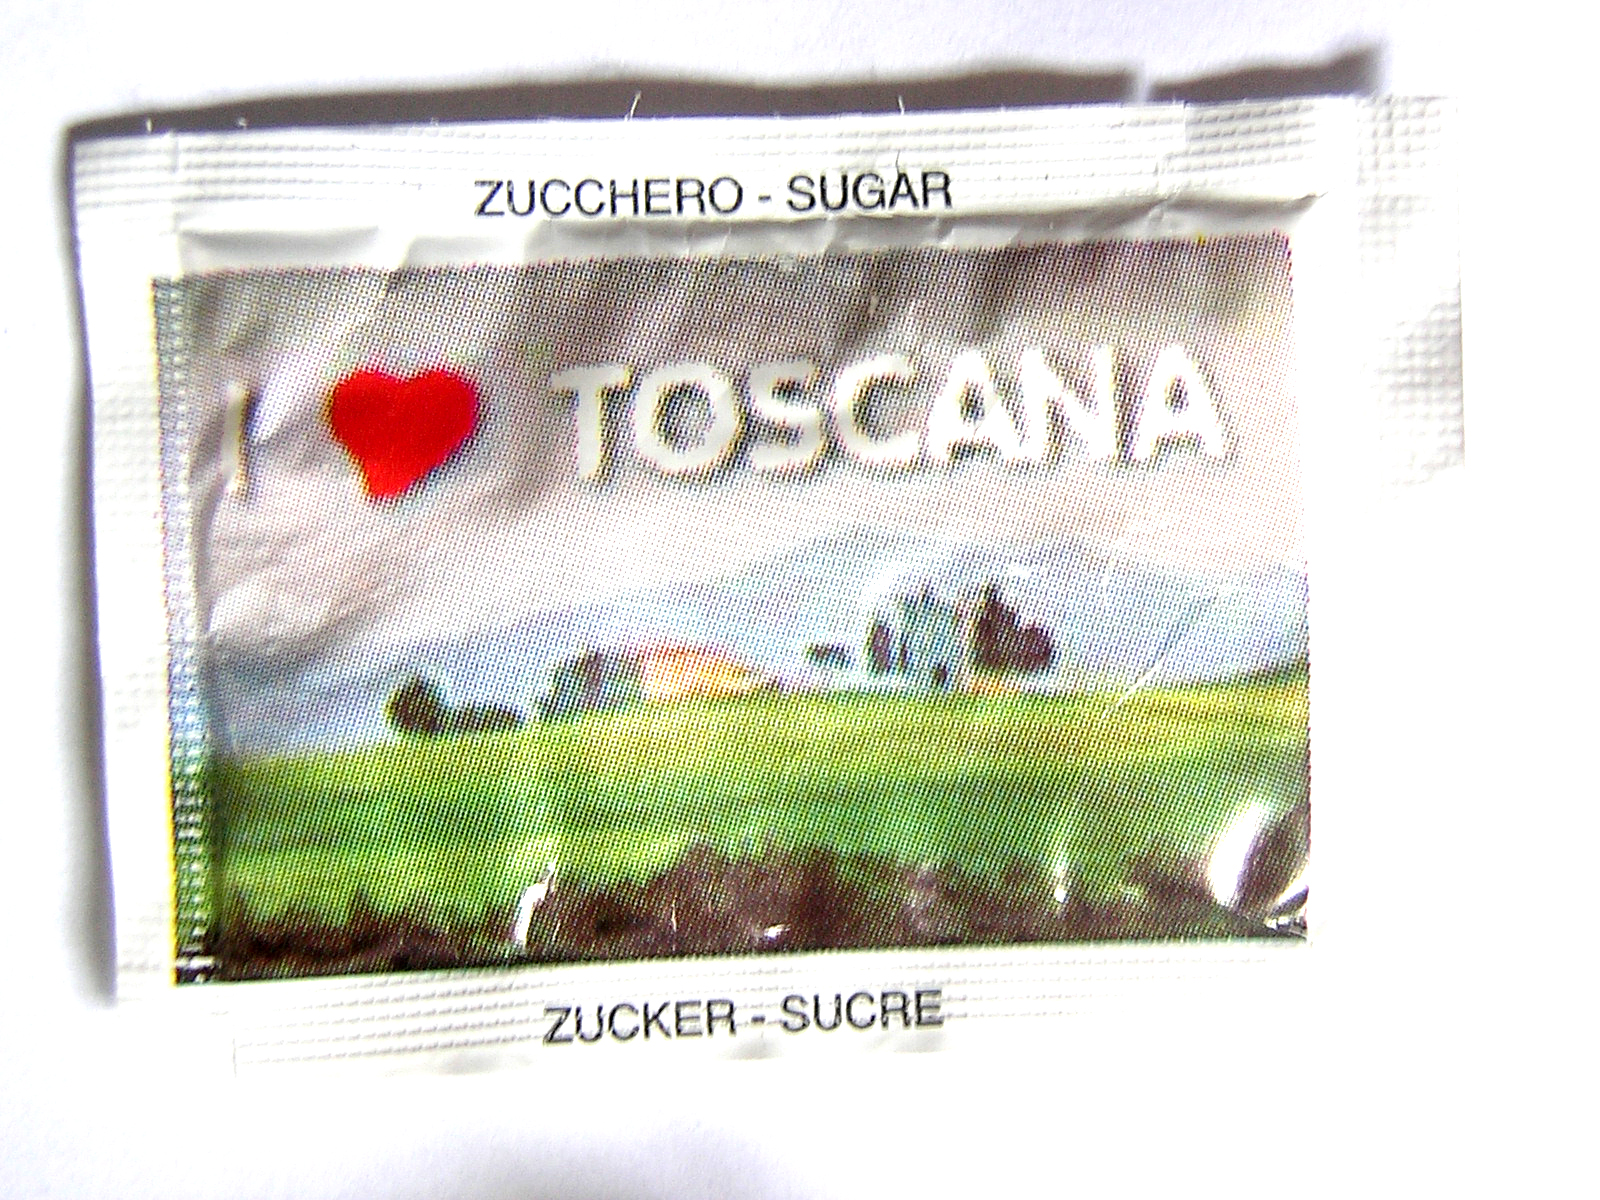 [I(heart)toscana.jpg]